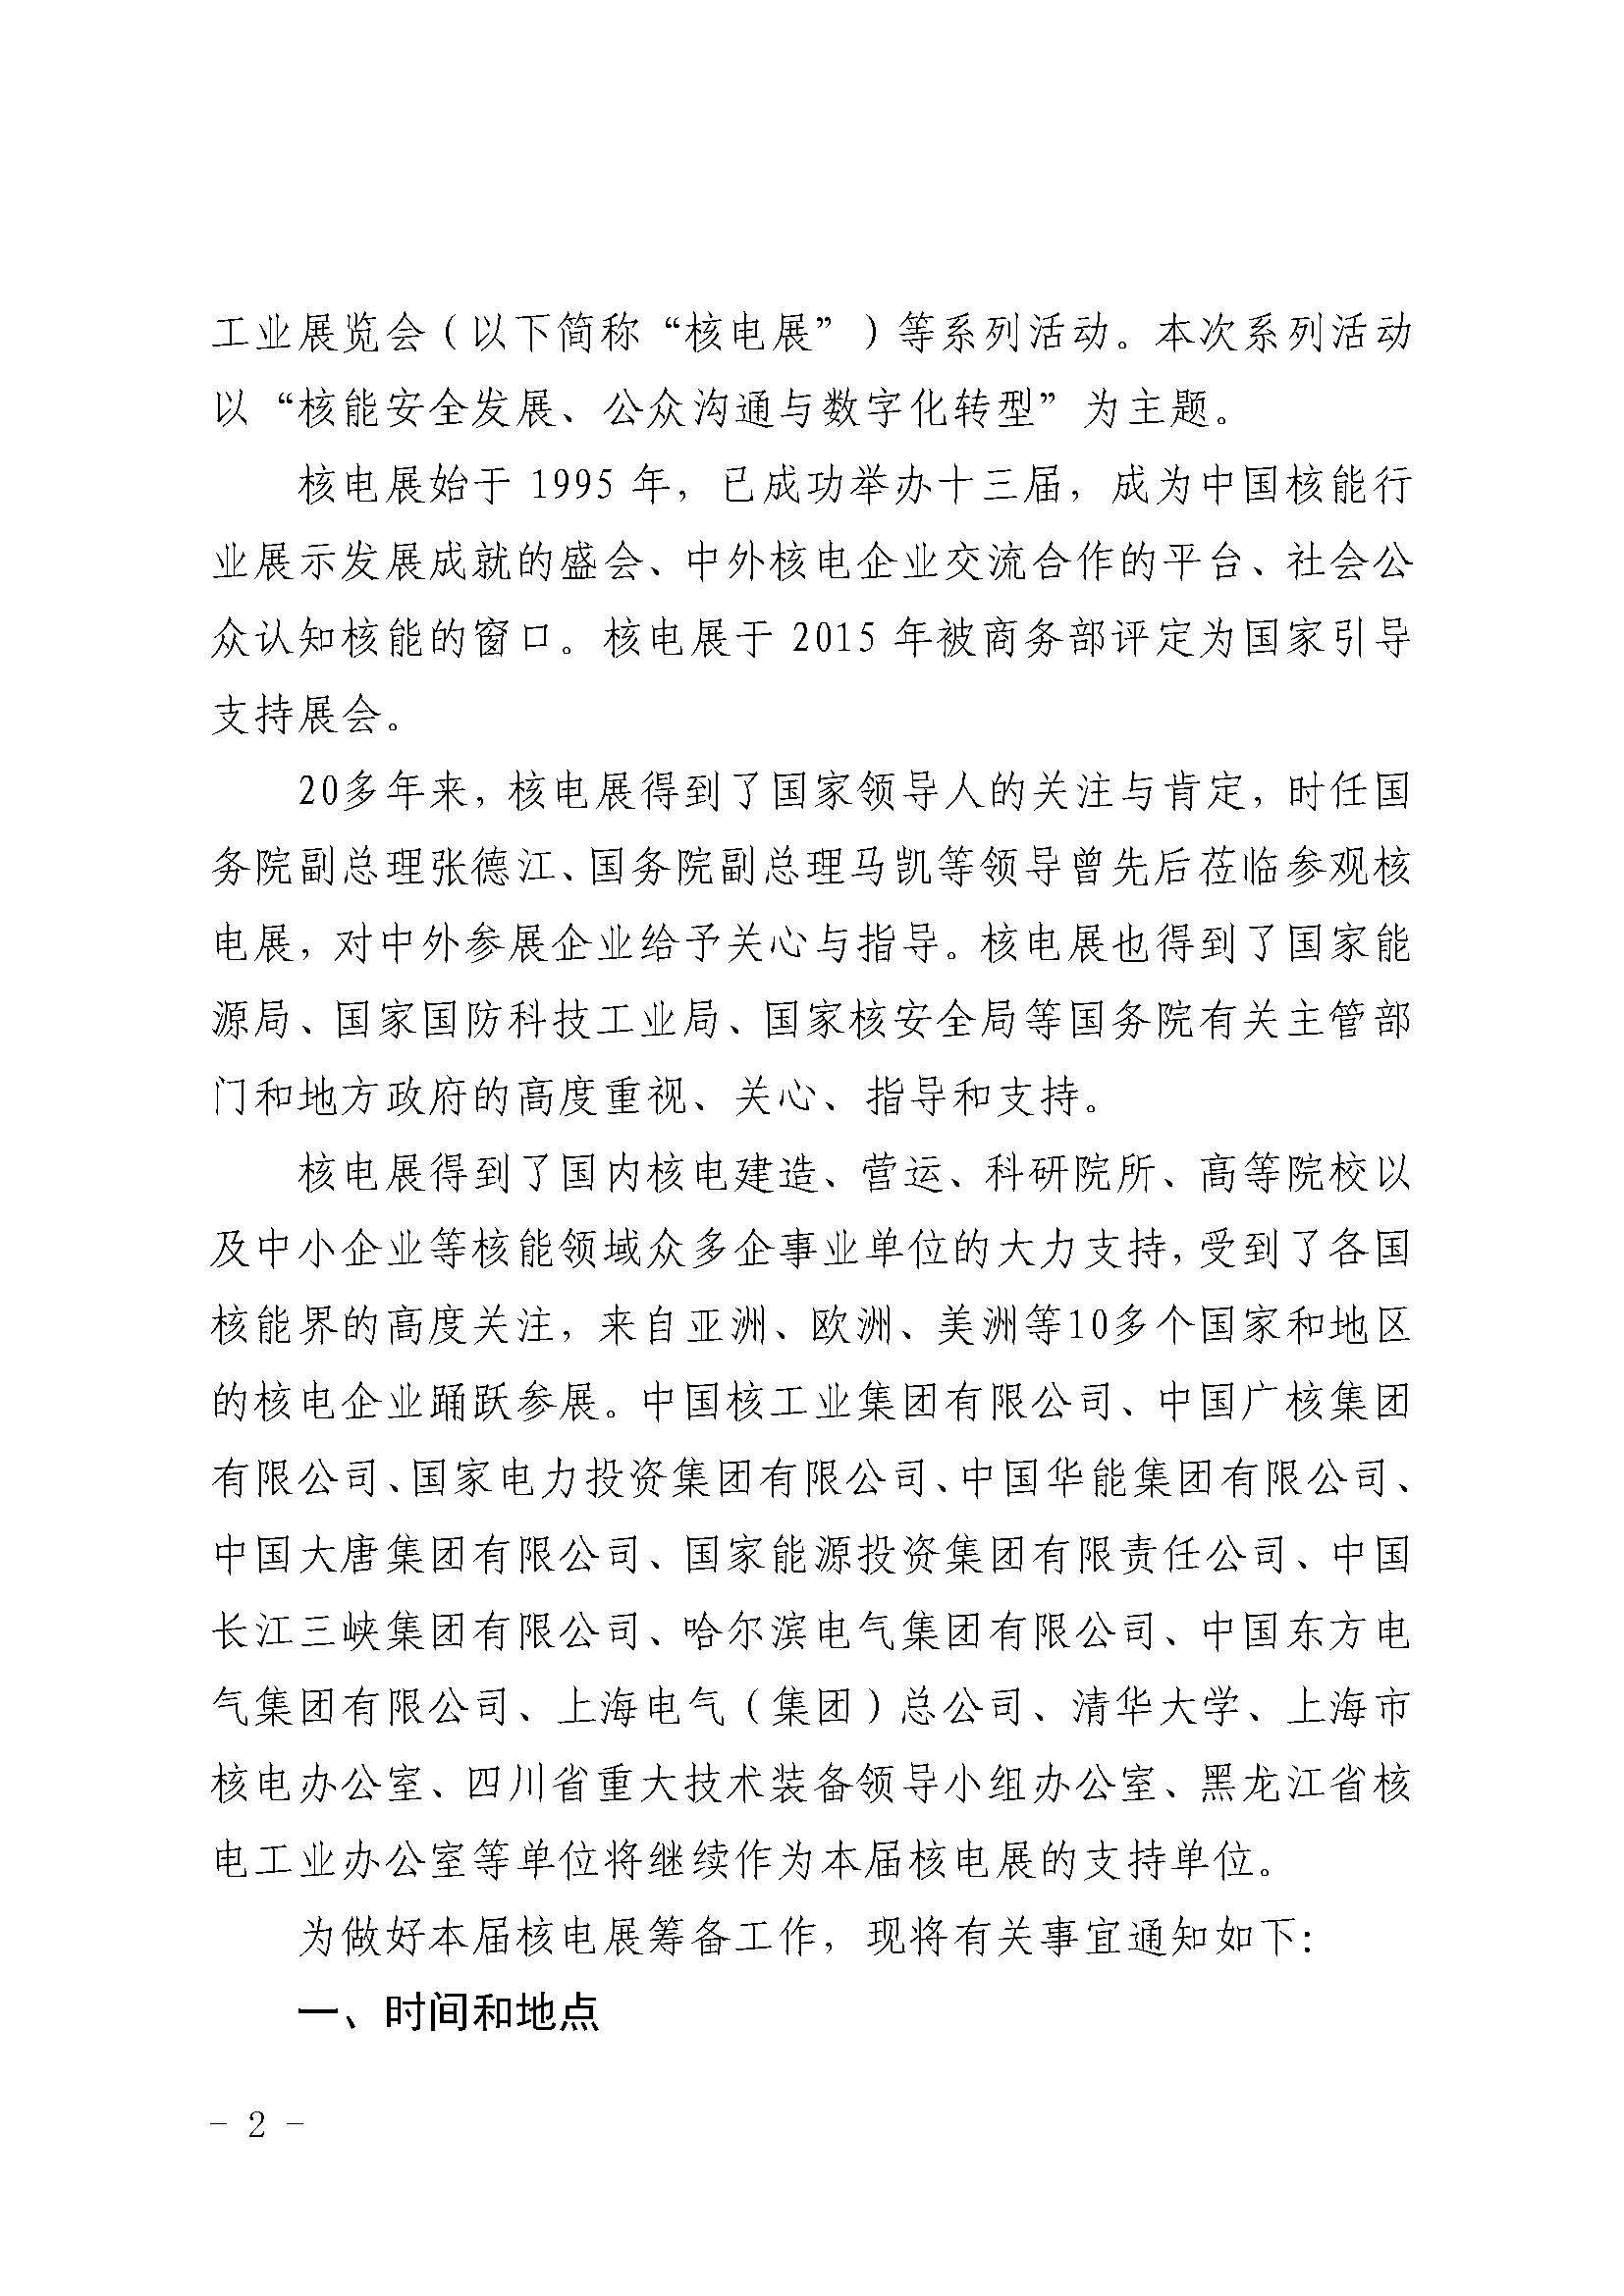 关于举办2021年第十四届中国国际核电工业展览会的通知核协会评发〔2020〕563号_页面_2.jpg